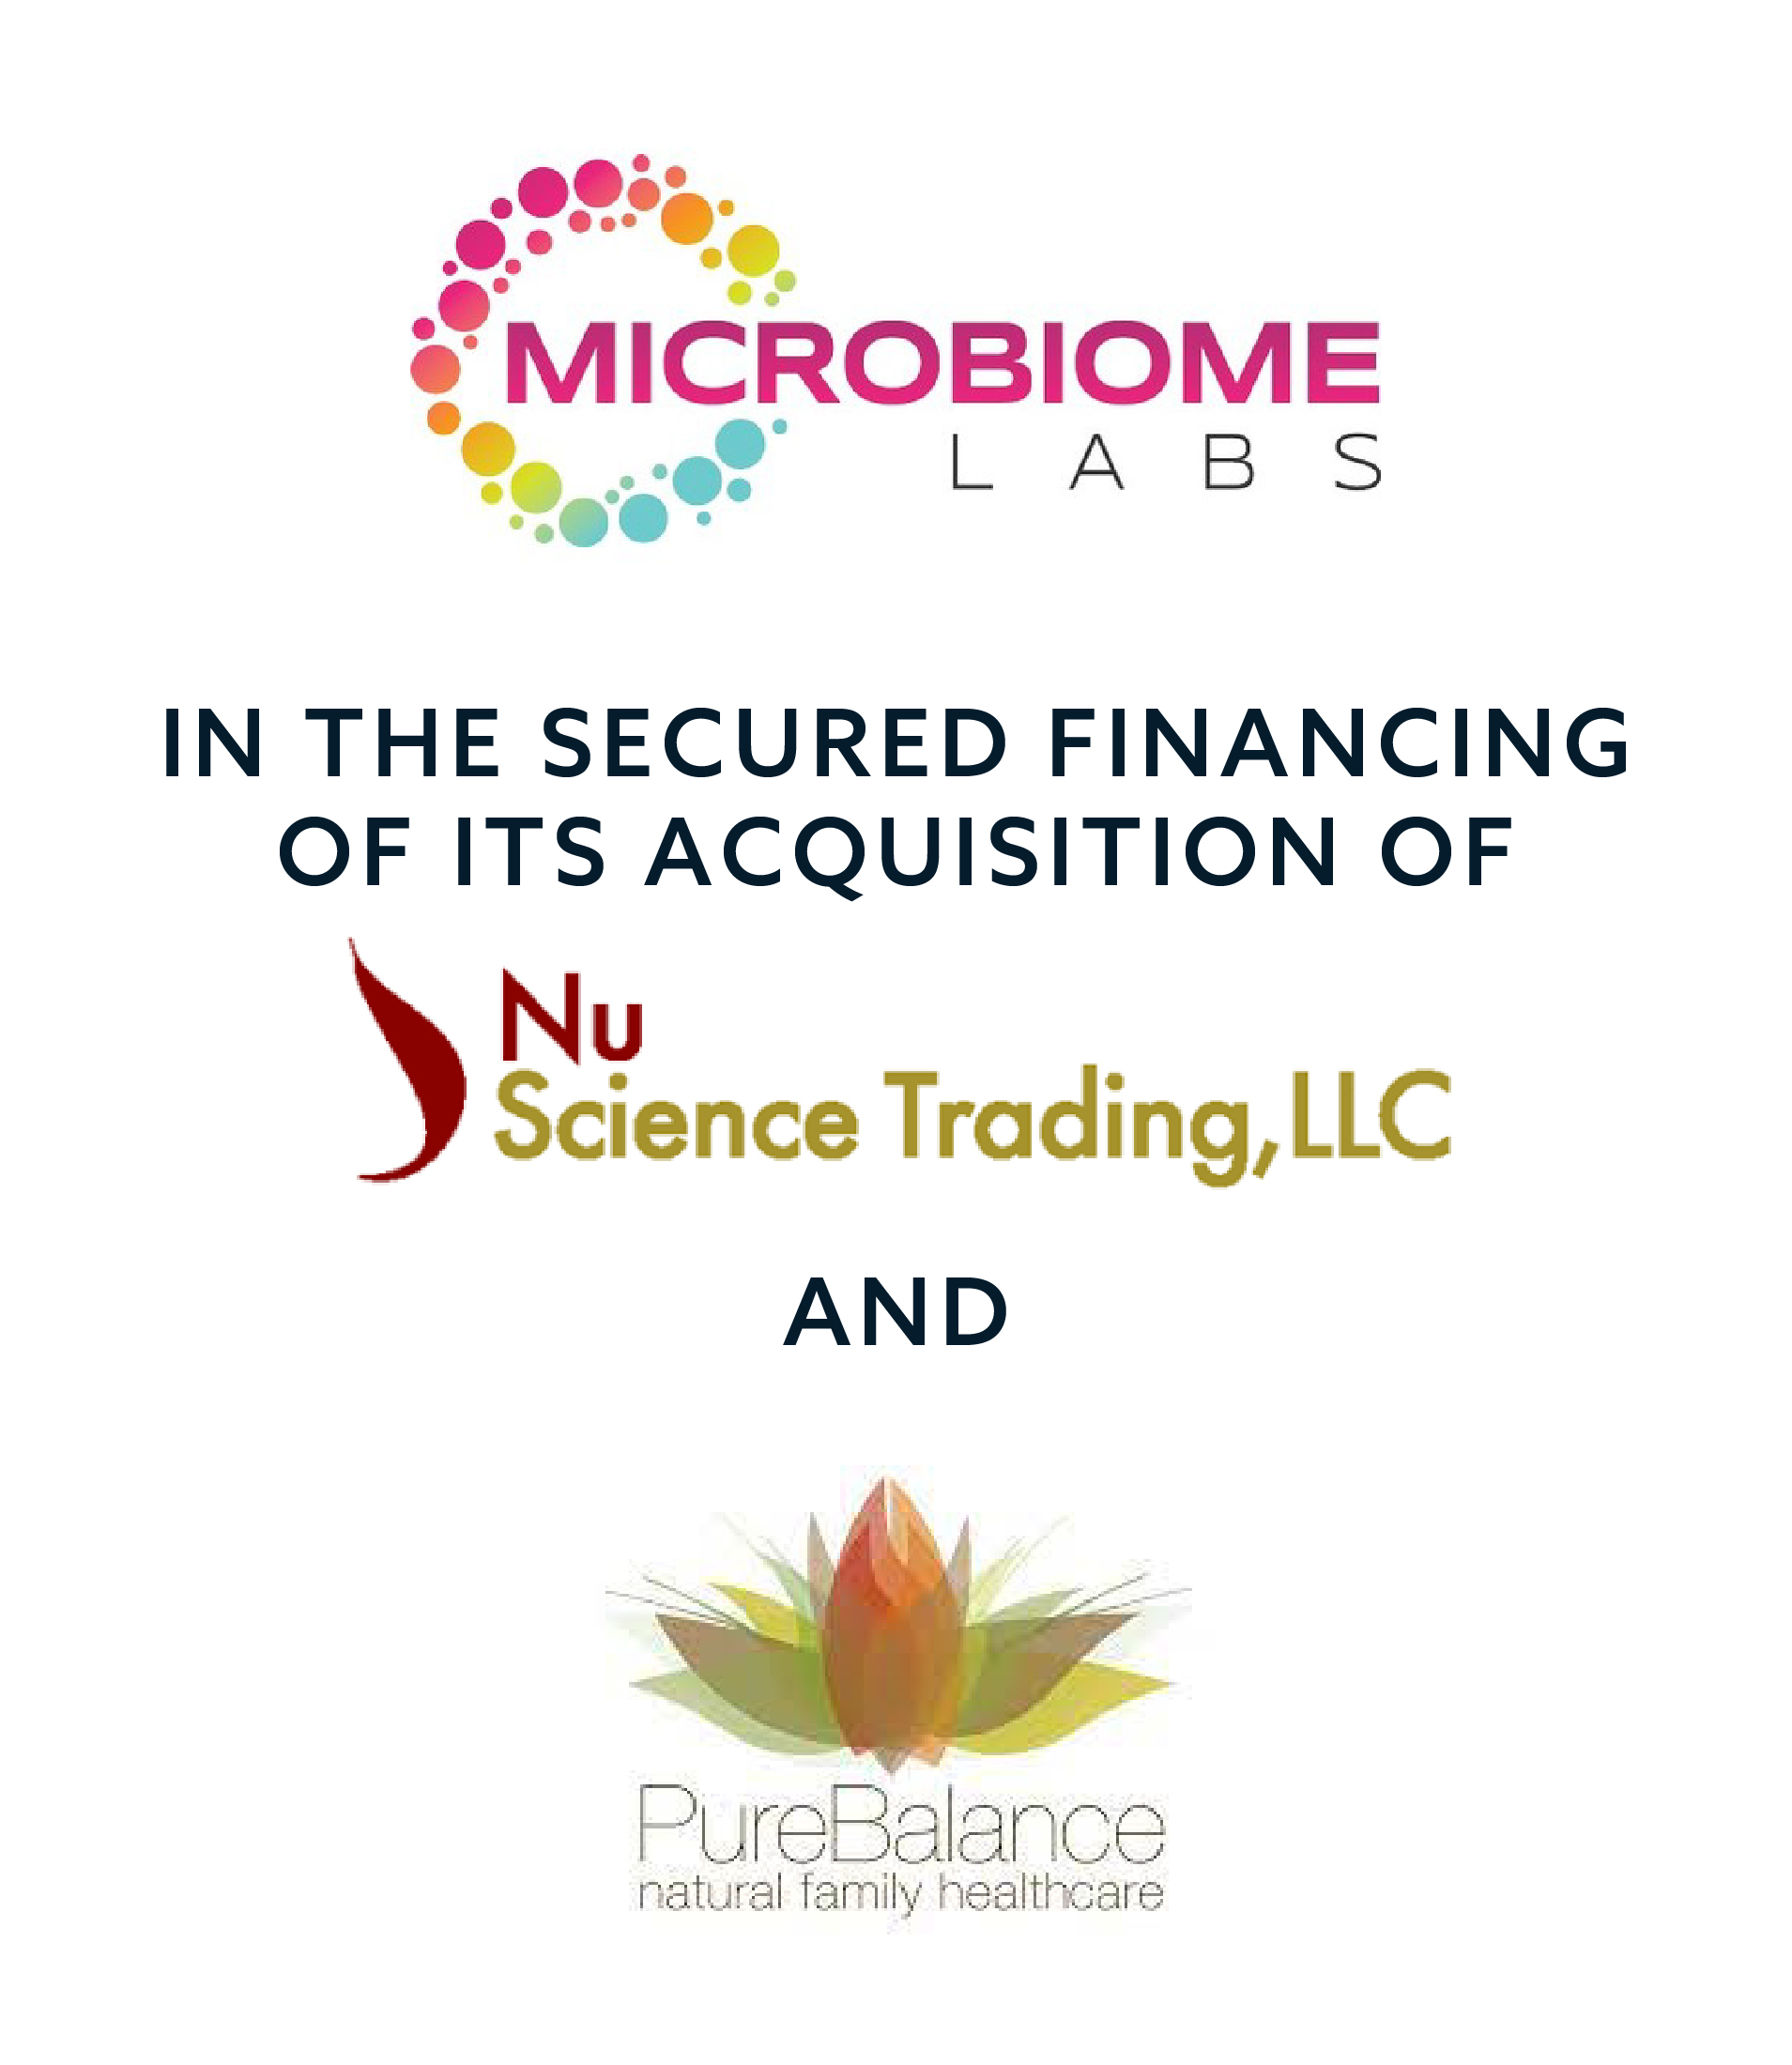 Microbiome_NUScience_PureBalance_062111.0002